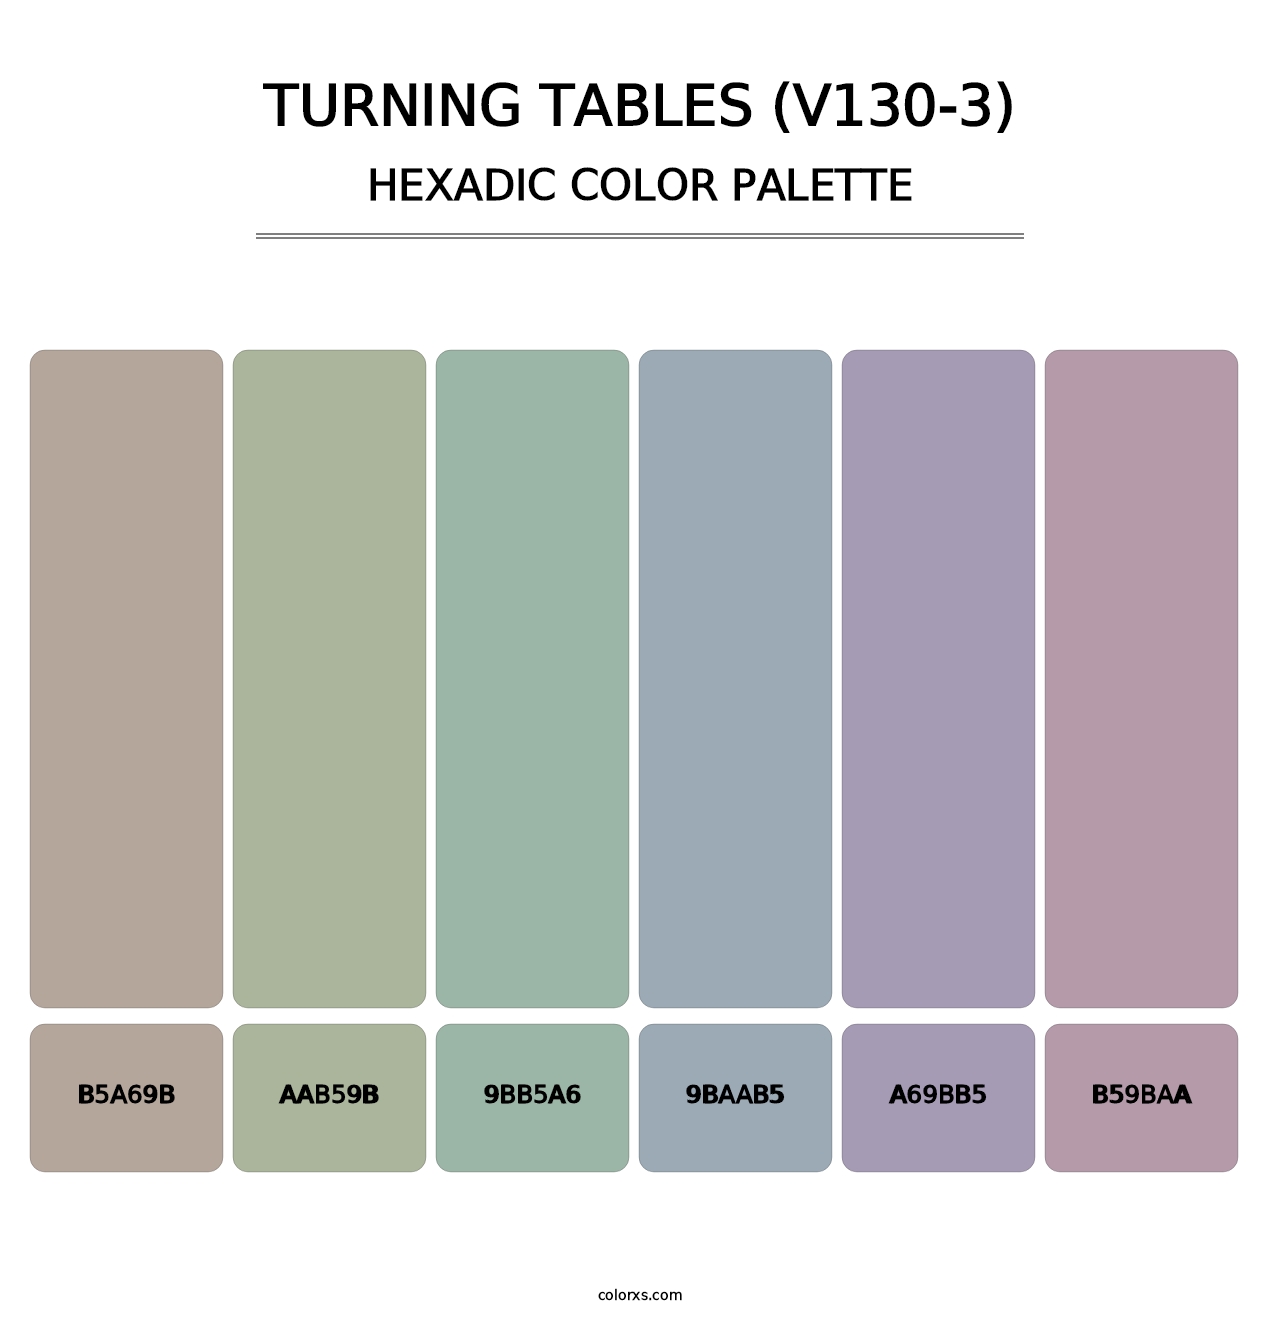 Turning Tables (V130-3) - Hexadic Color Palette